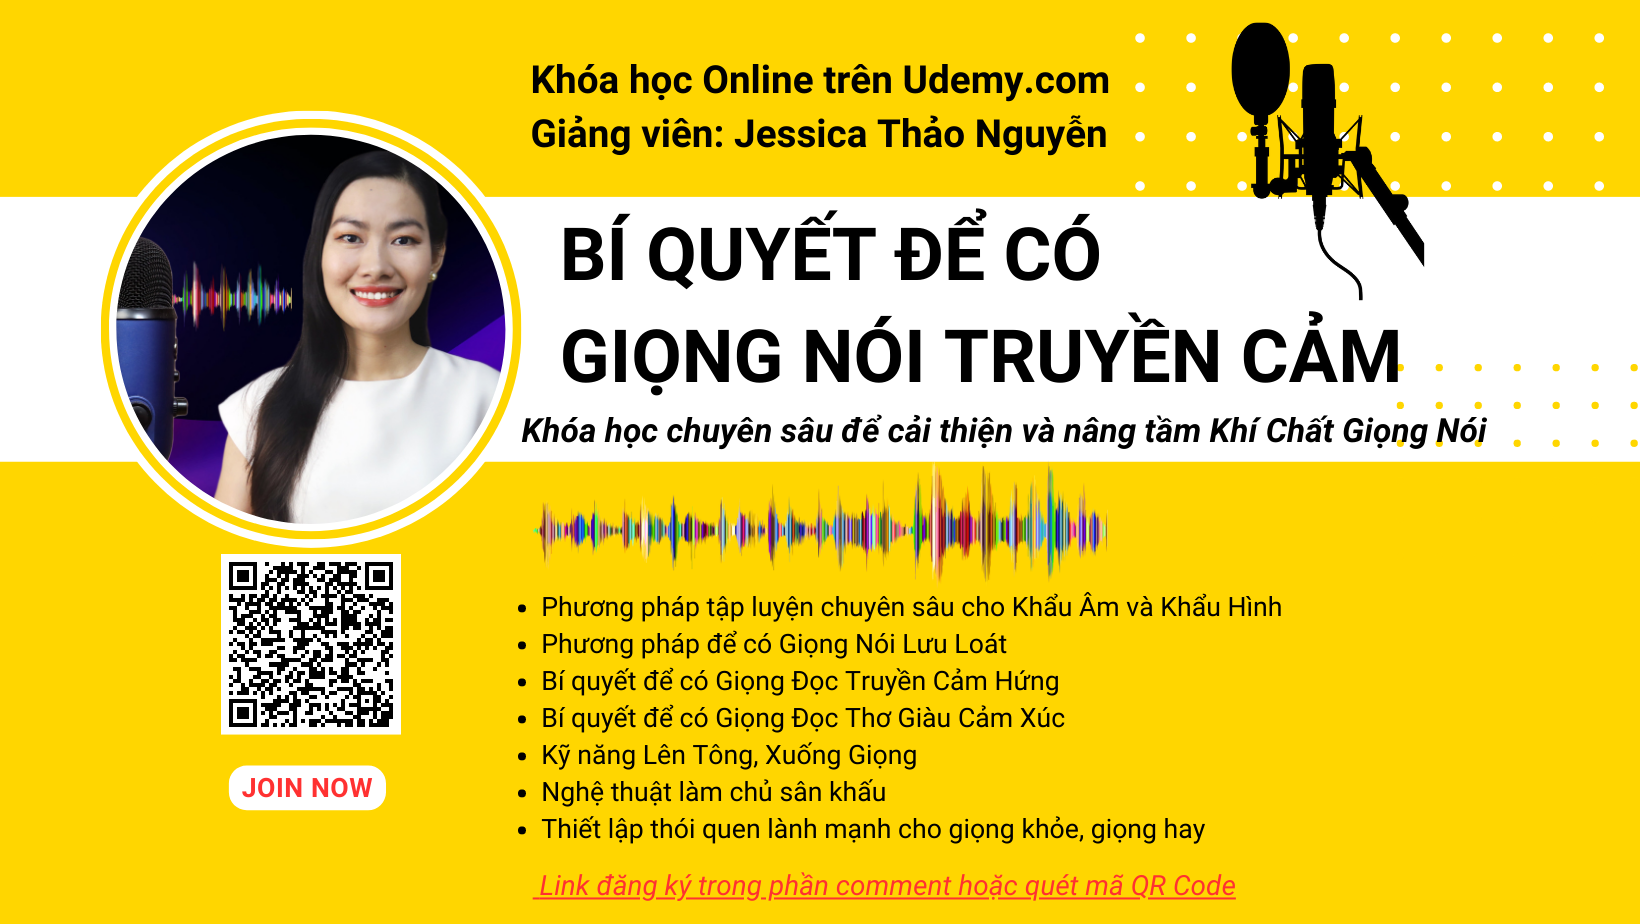 Khóa học chuyên sâu "Bí Quyết Để Có Giọng Nói Truyền Cảm" - Jessica Thảo Nguyễn.
